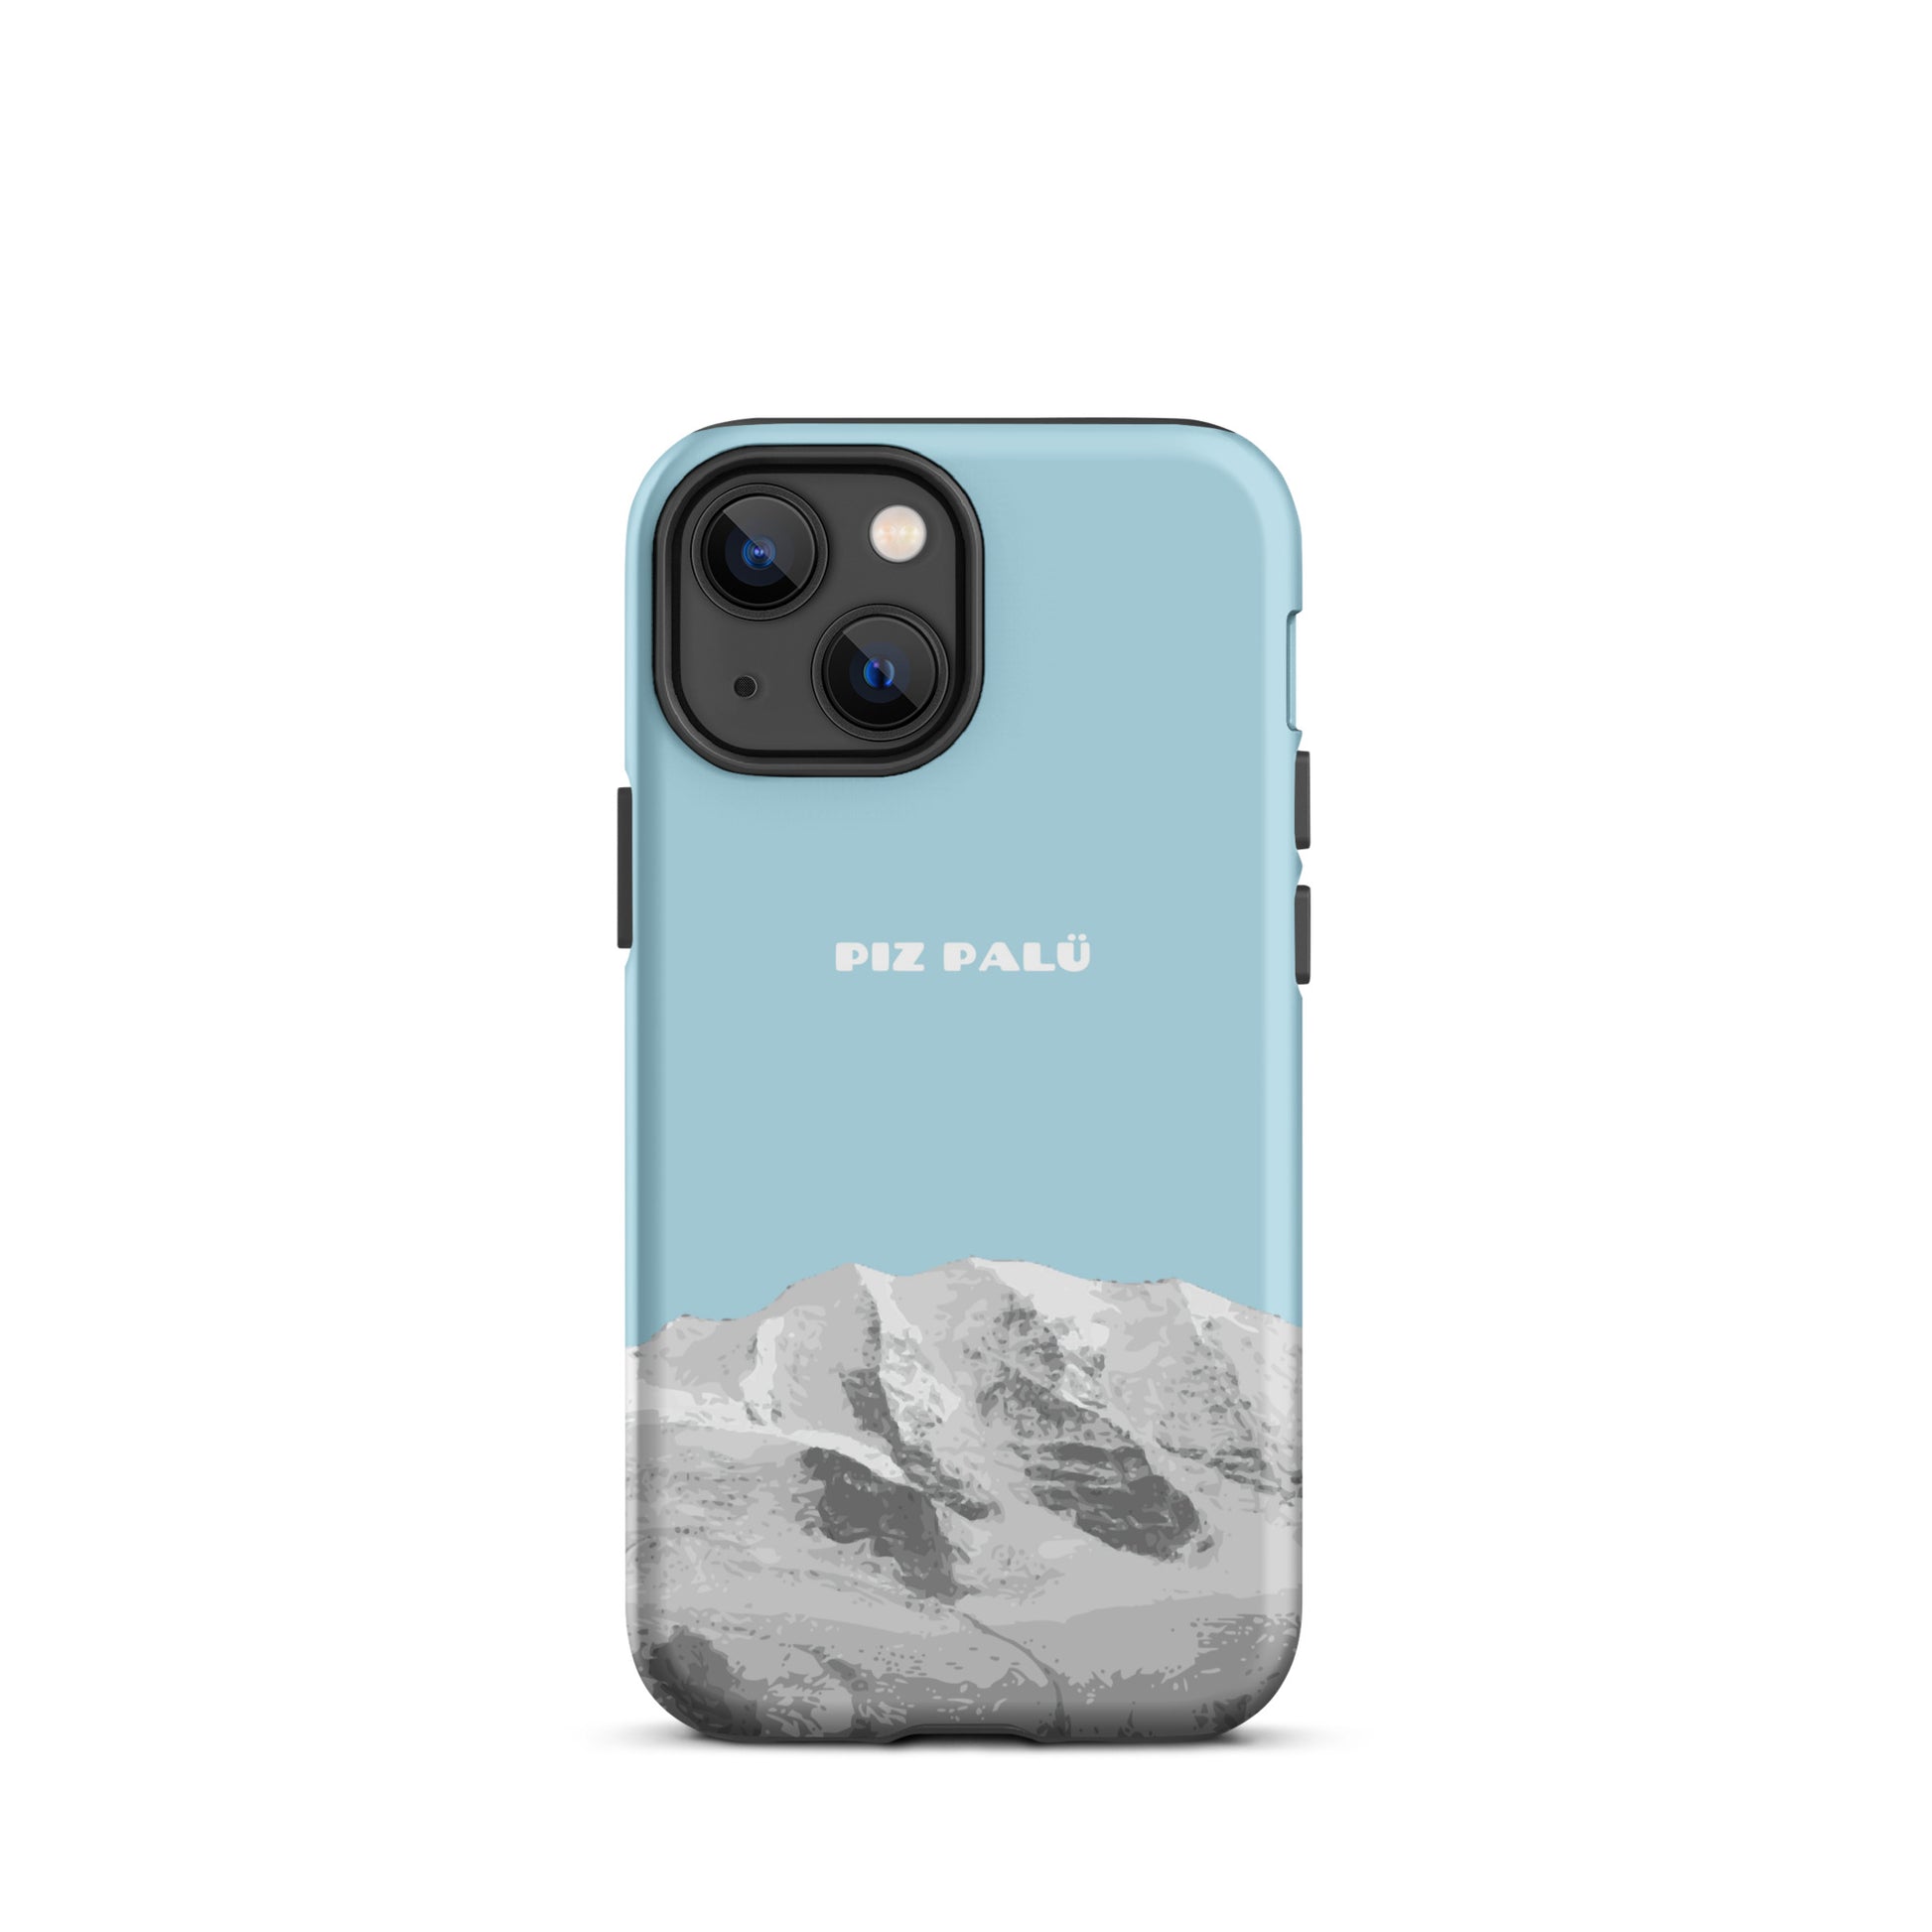 Hülle für das iPhone 13 Mini von Apple in der Farbe Hellblau, dass den Piz Palü in Graubünden zeigt.